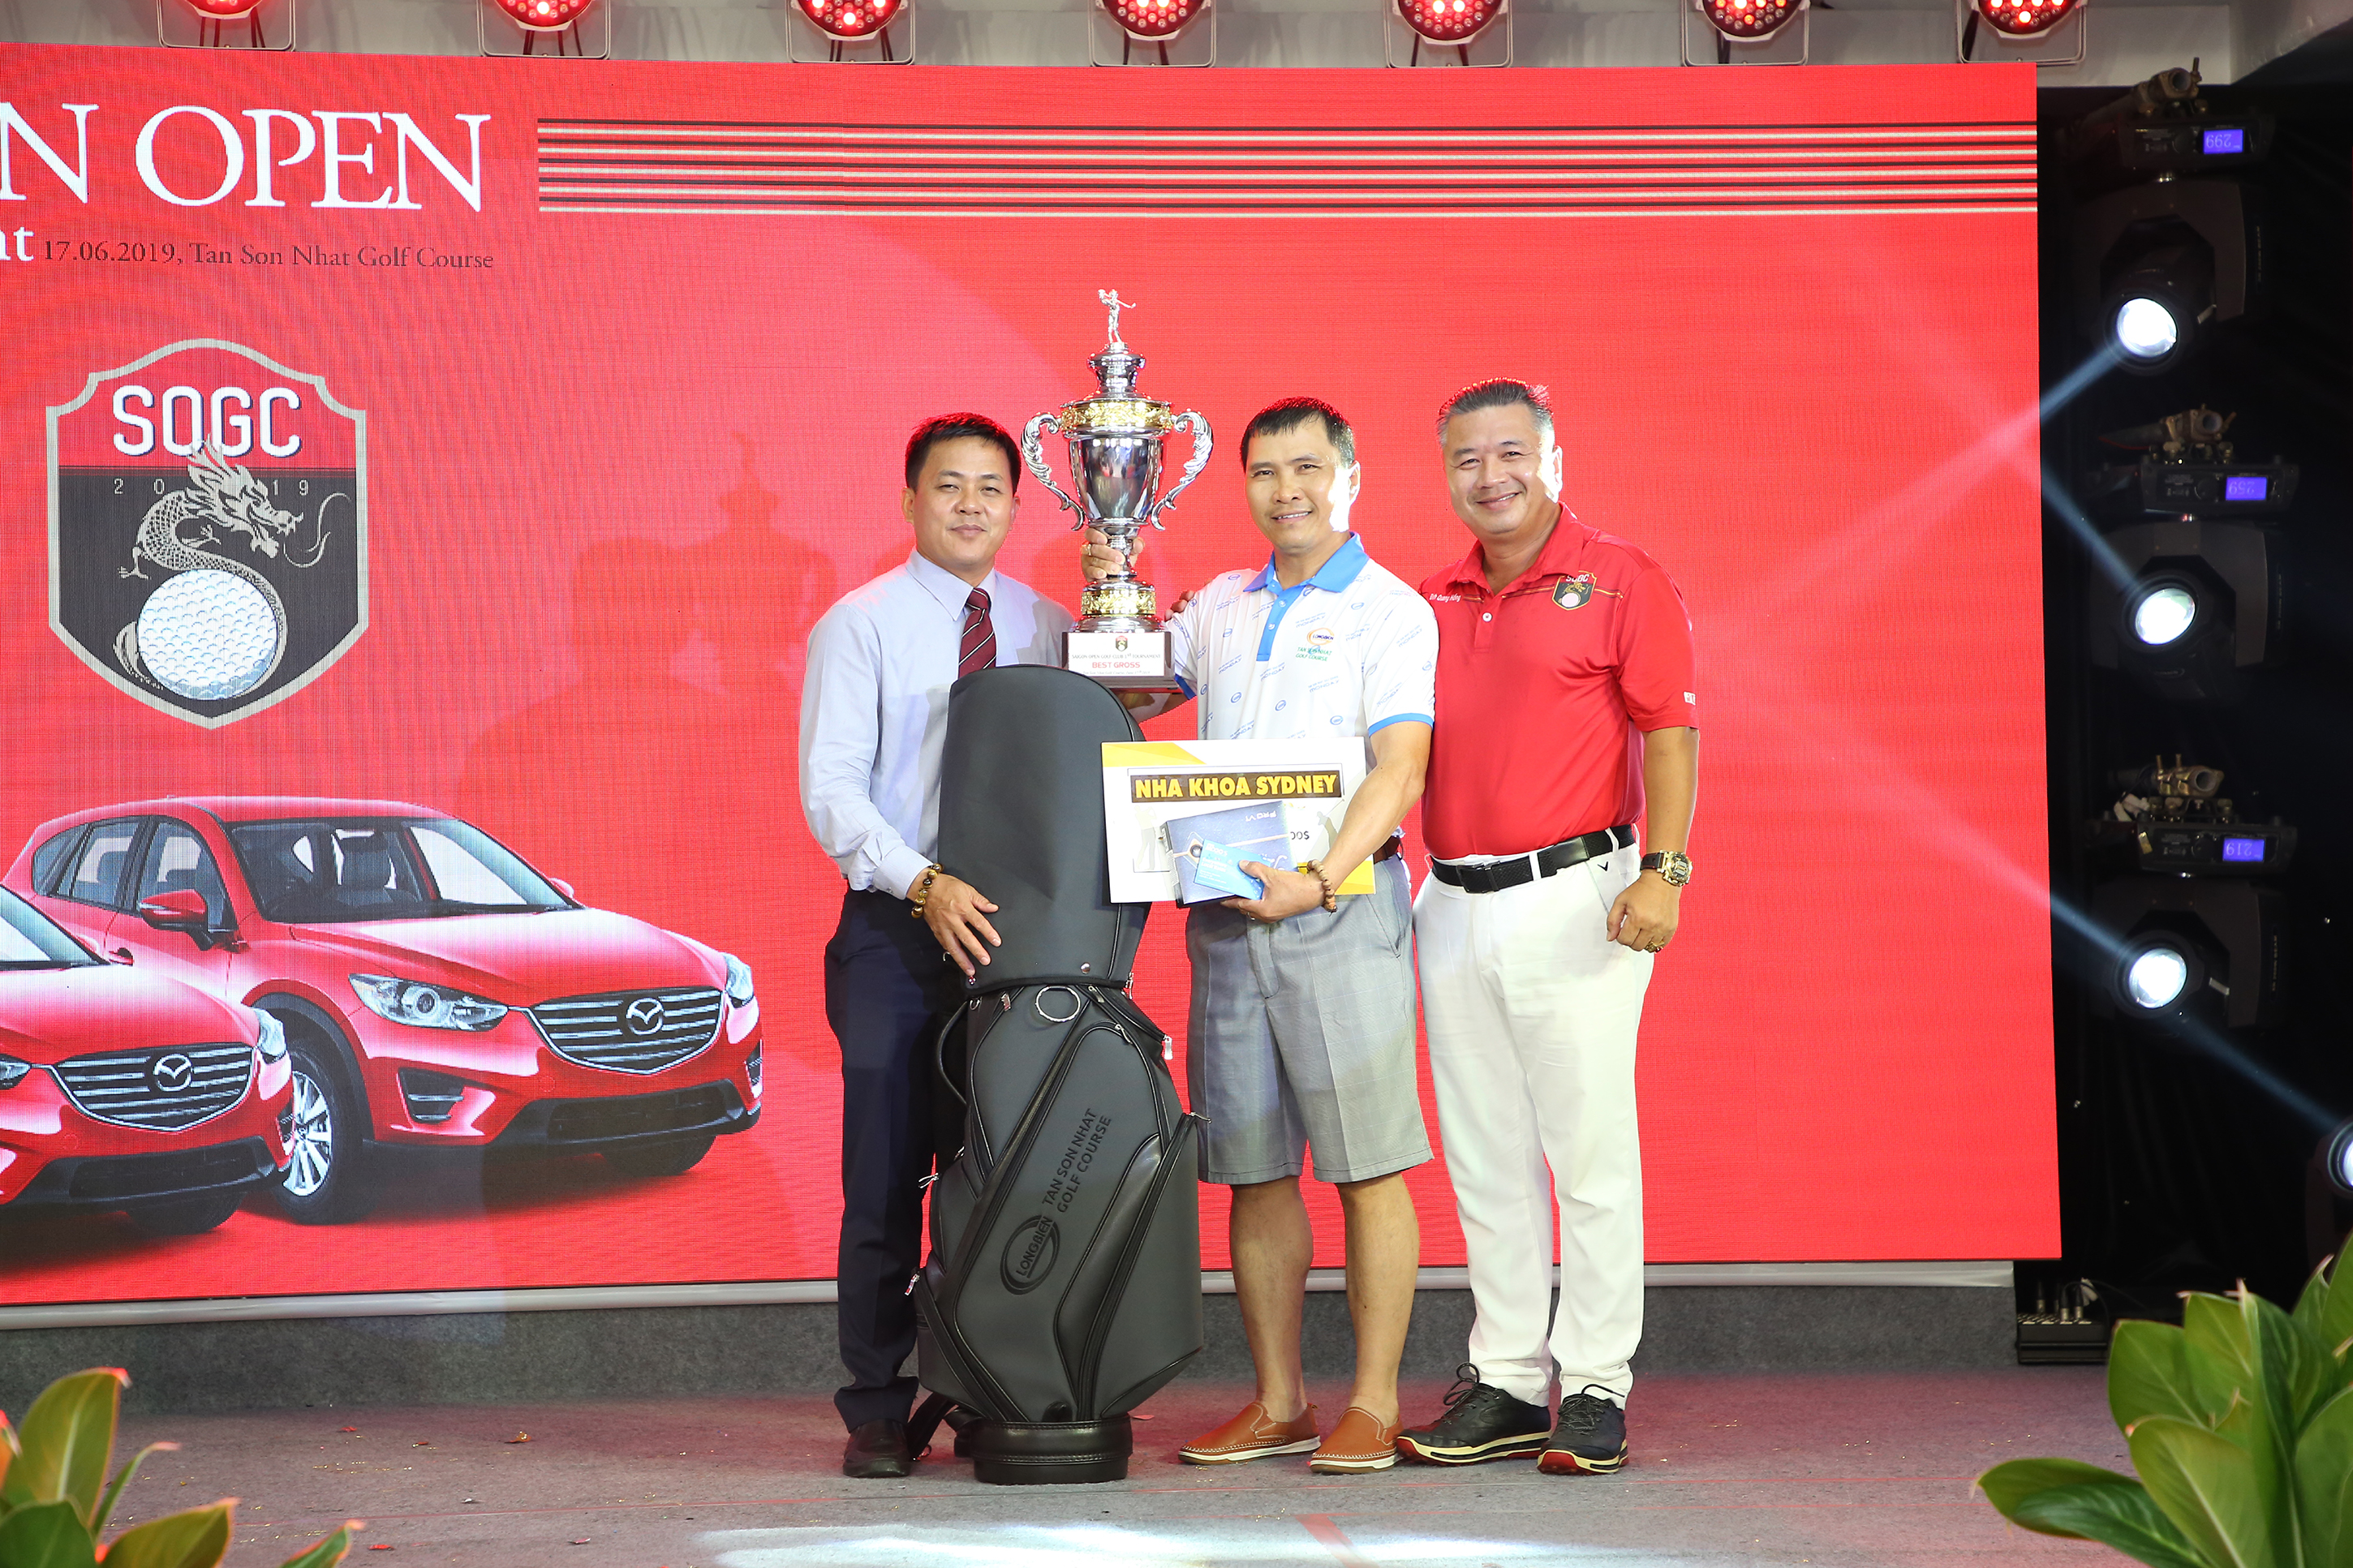 Nguyễn Quốc Tình đạt Best Gross giải golf Sai Gon Open tournament lần thứ 1